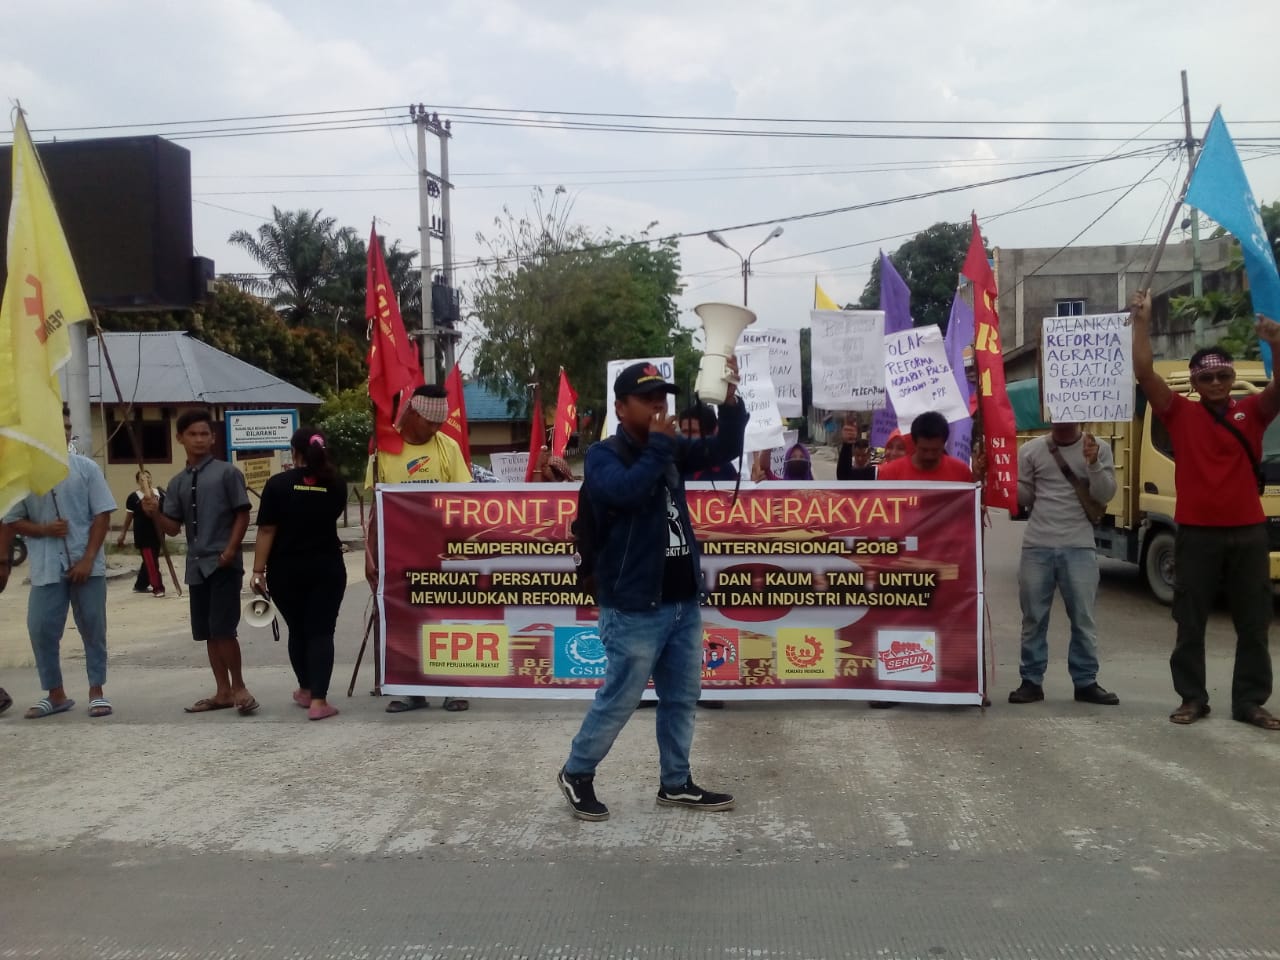 Sempena Hari Buruh, FPR Gelar Aksi Demonstrasi Damai  Tuntut Sejumlah Hal Kepentingan Buruh